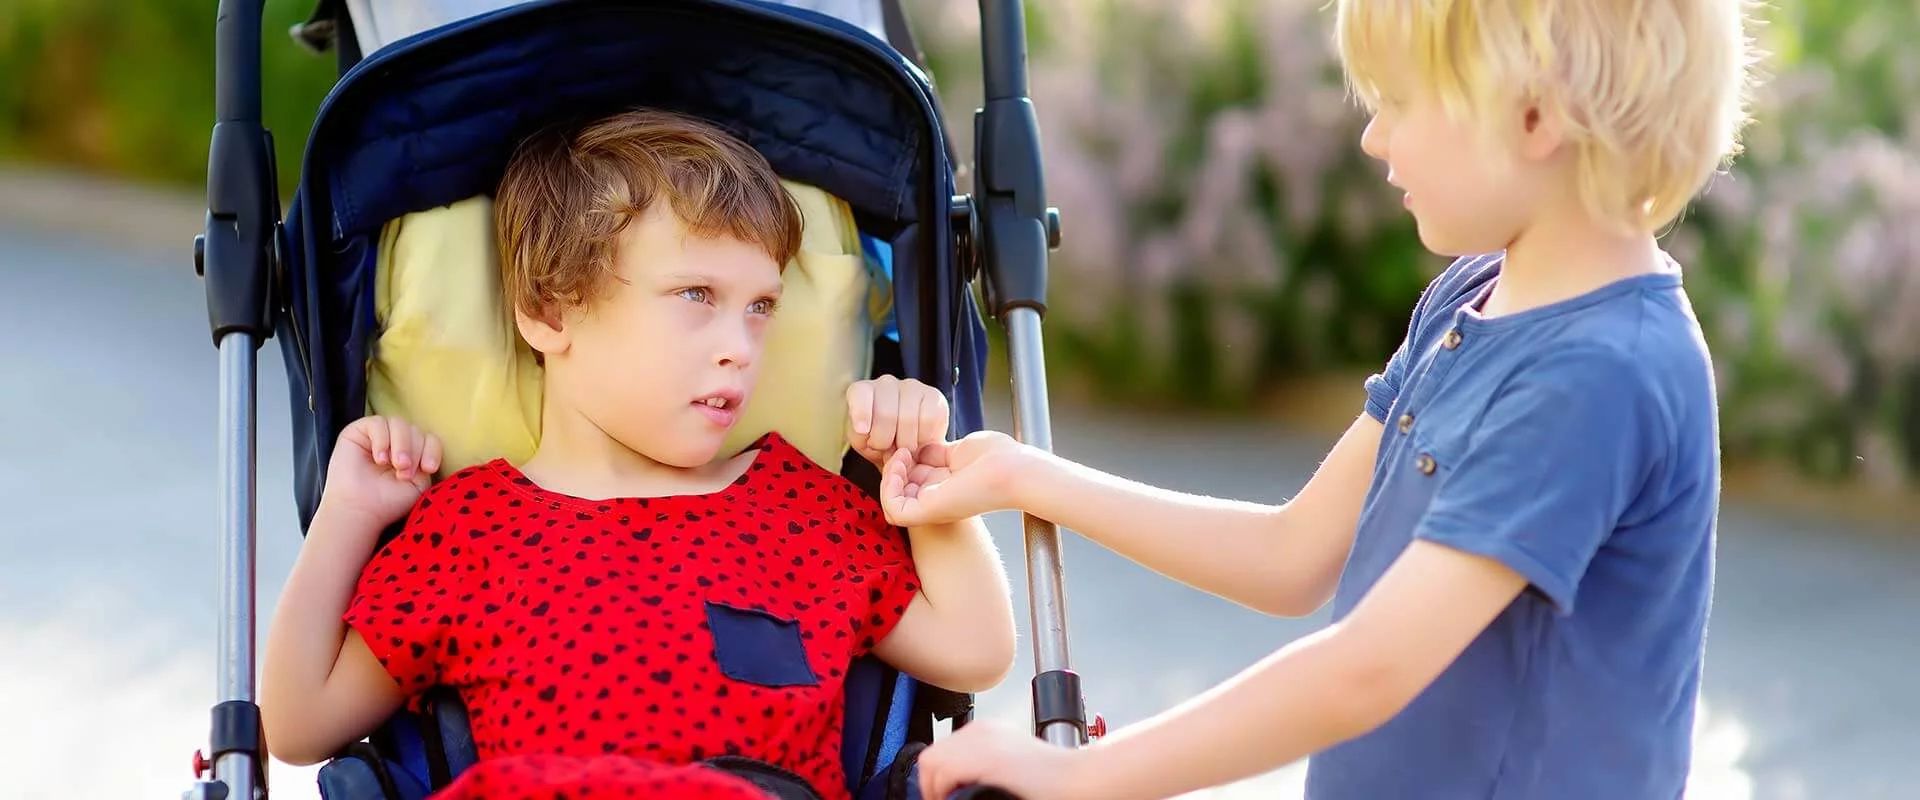 Ein Mädchen sitzt im Kinderwagen. Vor ihr steht ein kleiner Junge. Sie schaut diesen intensiv an. Der Junge hält eine Hand des Mädchens. Es ist Sommer.